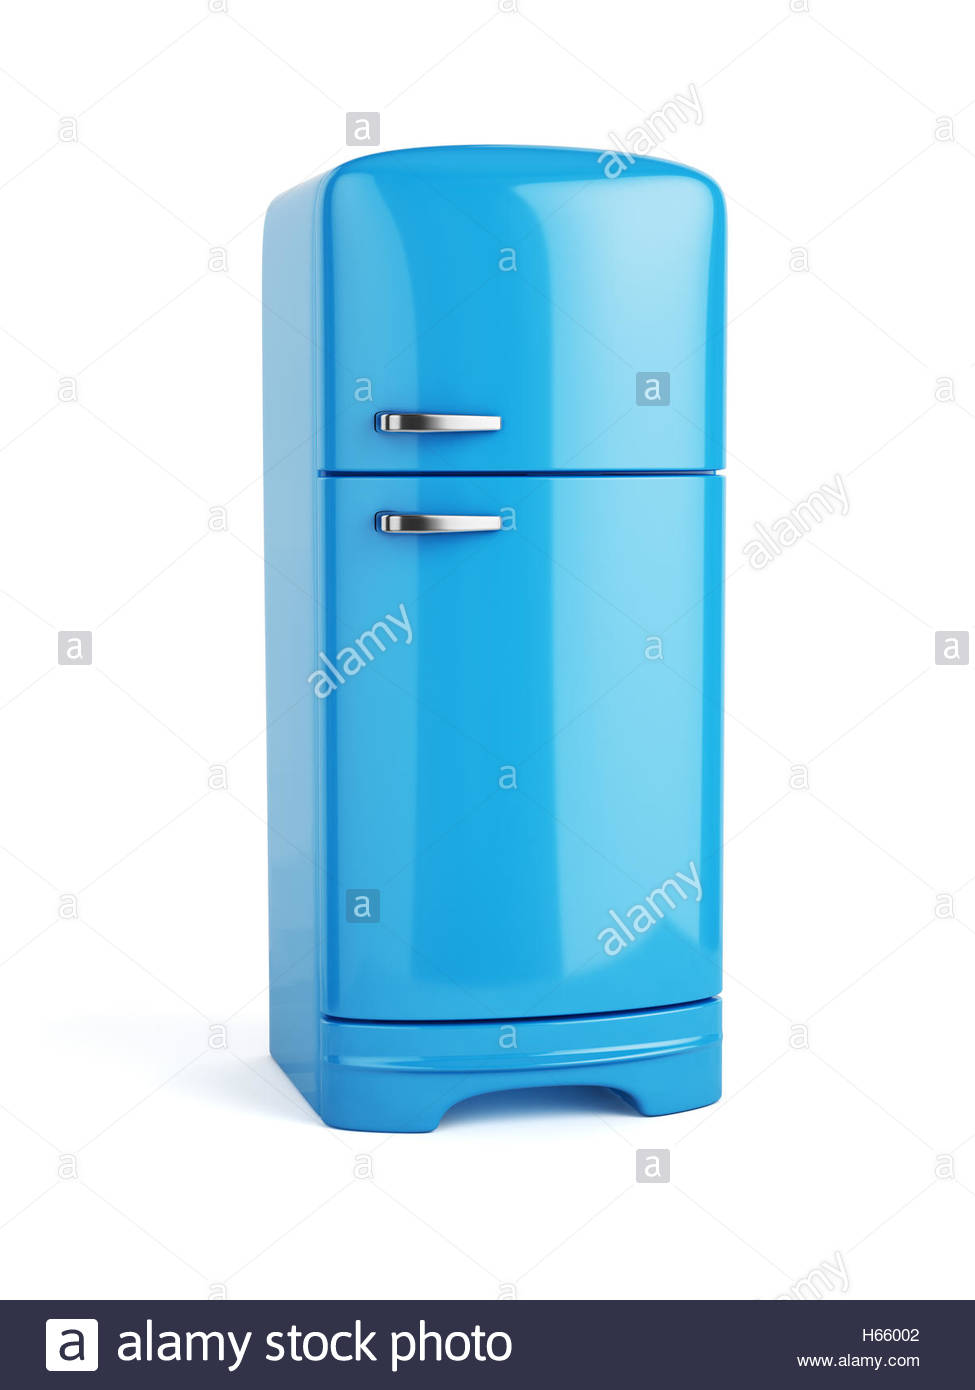 Retro Blue Fridge Refrigerator Isolated On White Background 3d